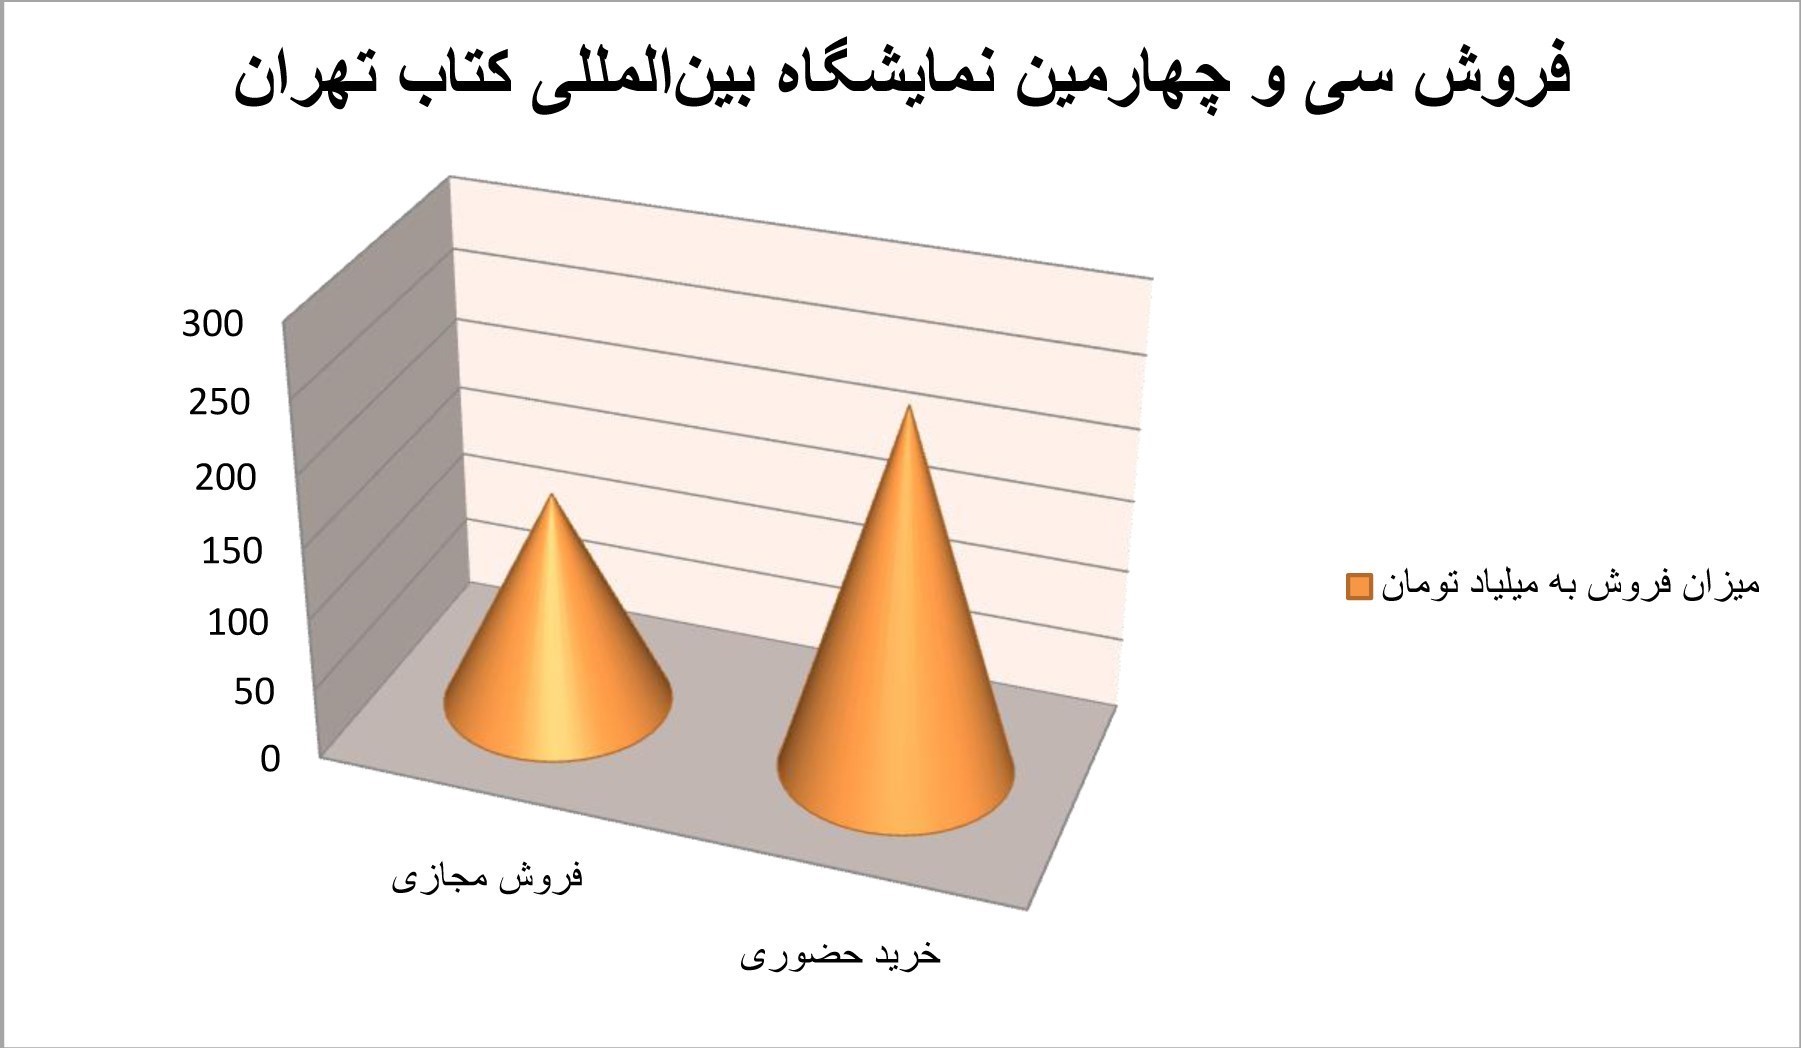 نمایشگاه کتاب تهران به روایت آمار